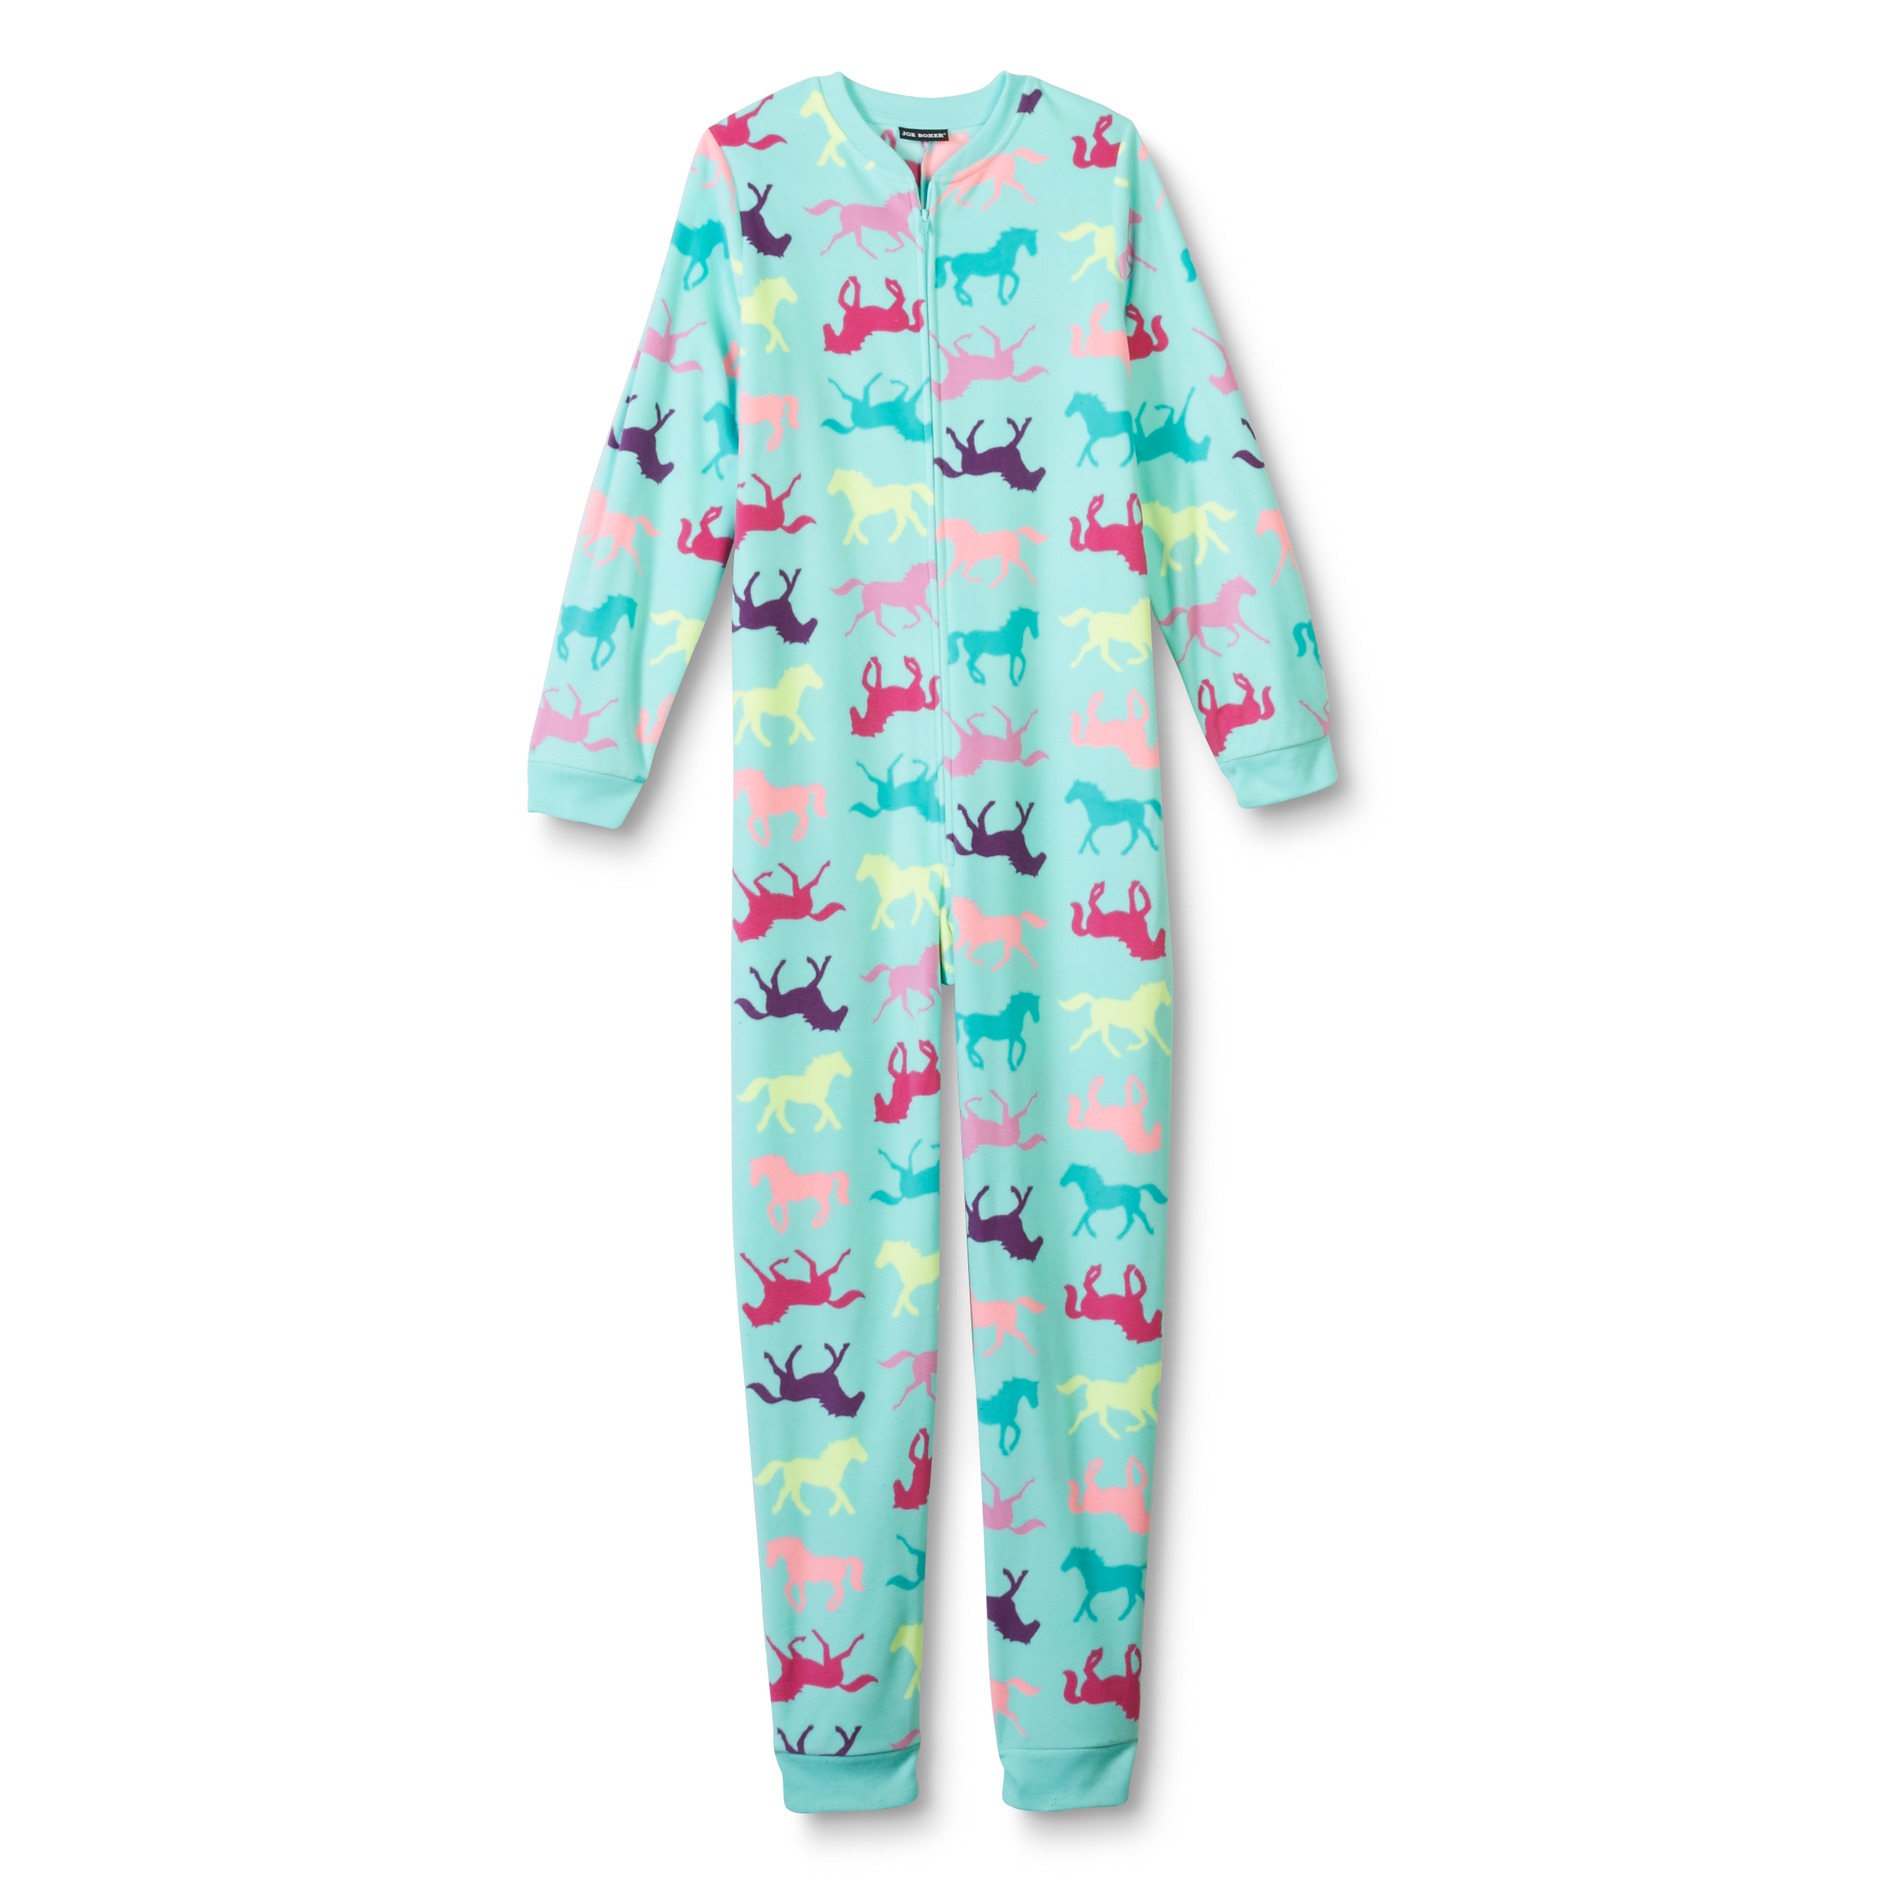 Joe Boxer Girl's One-Piece Fleece Pajamas - Horses